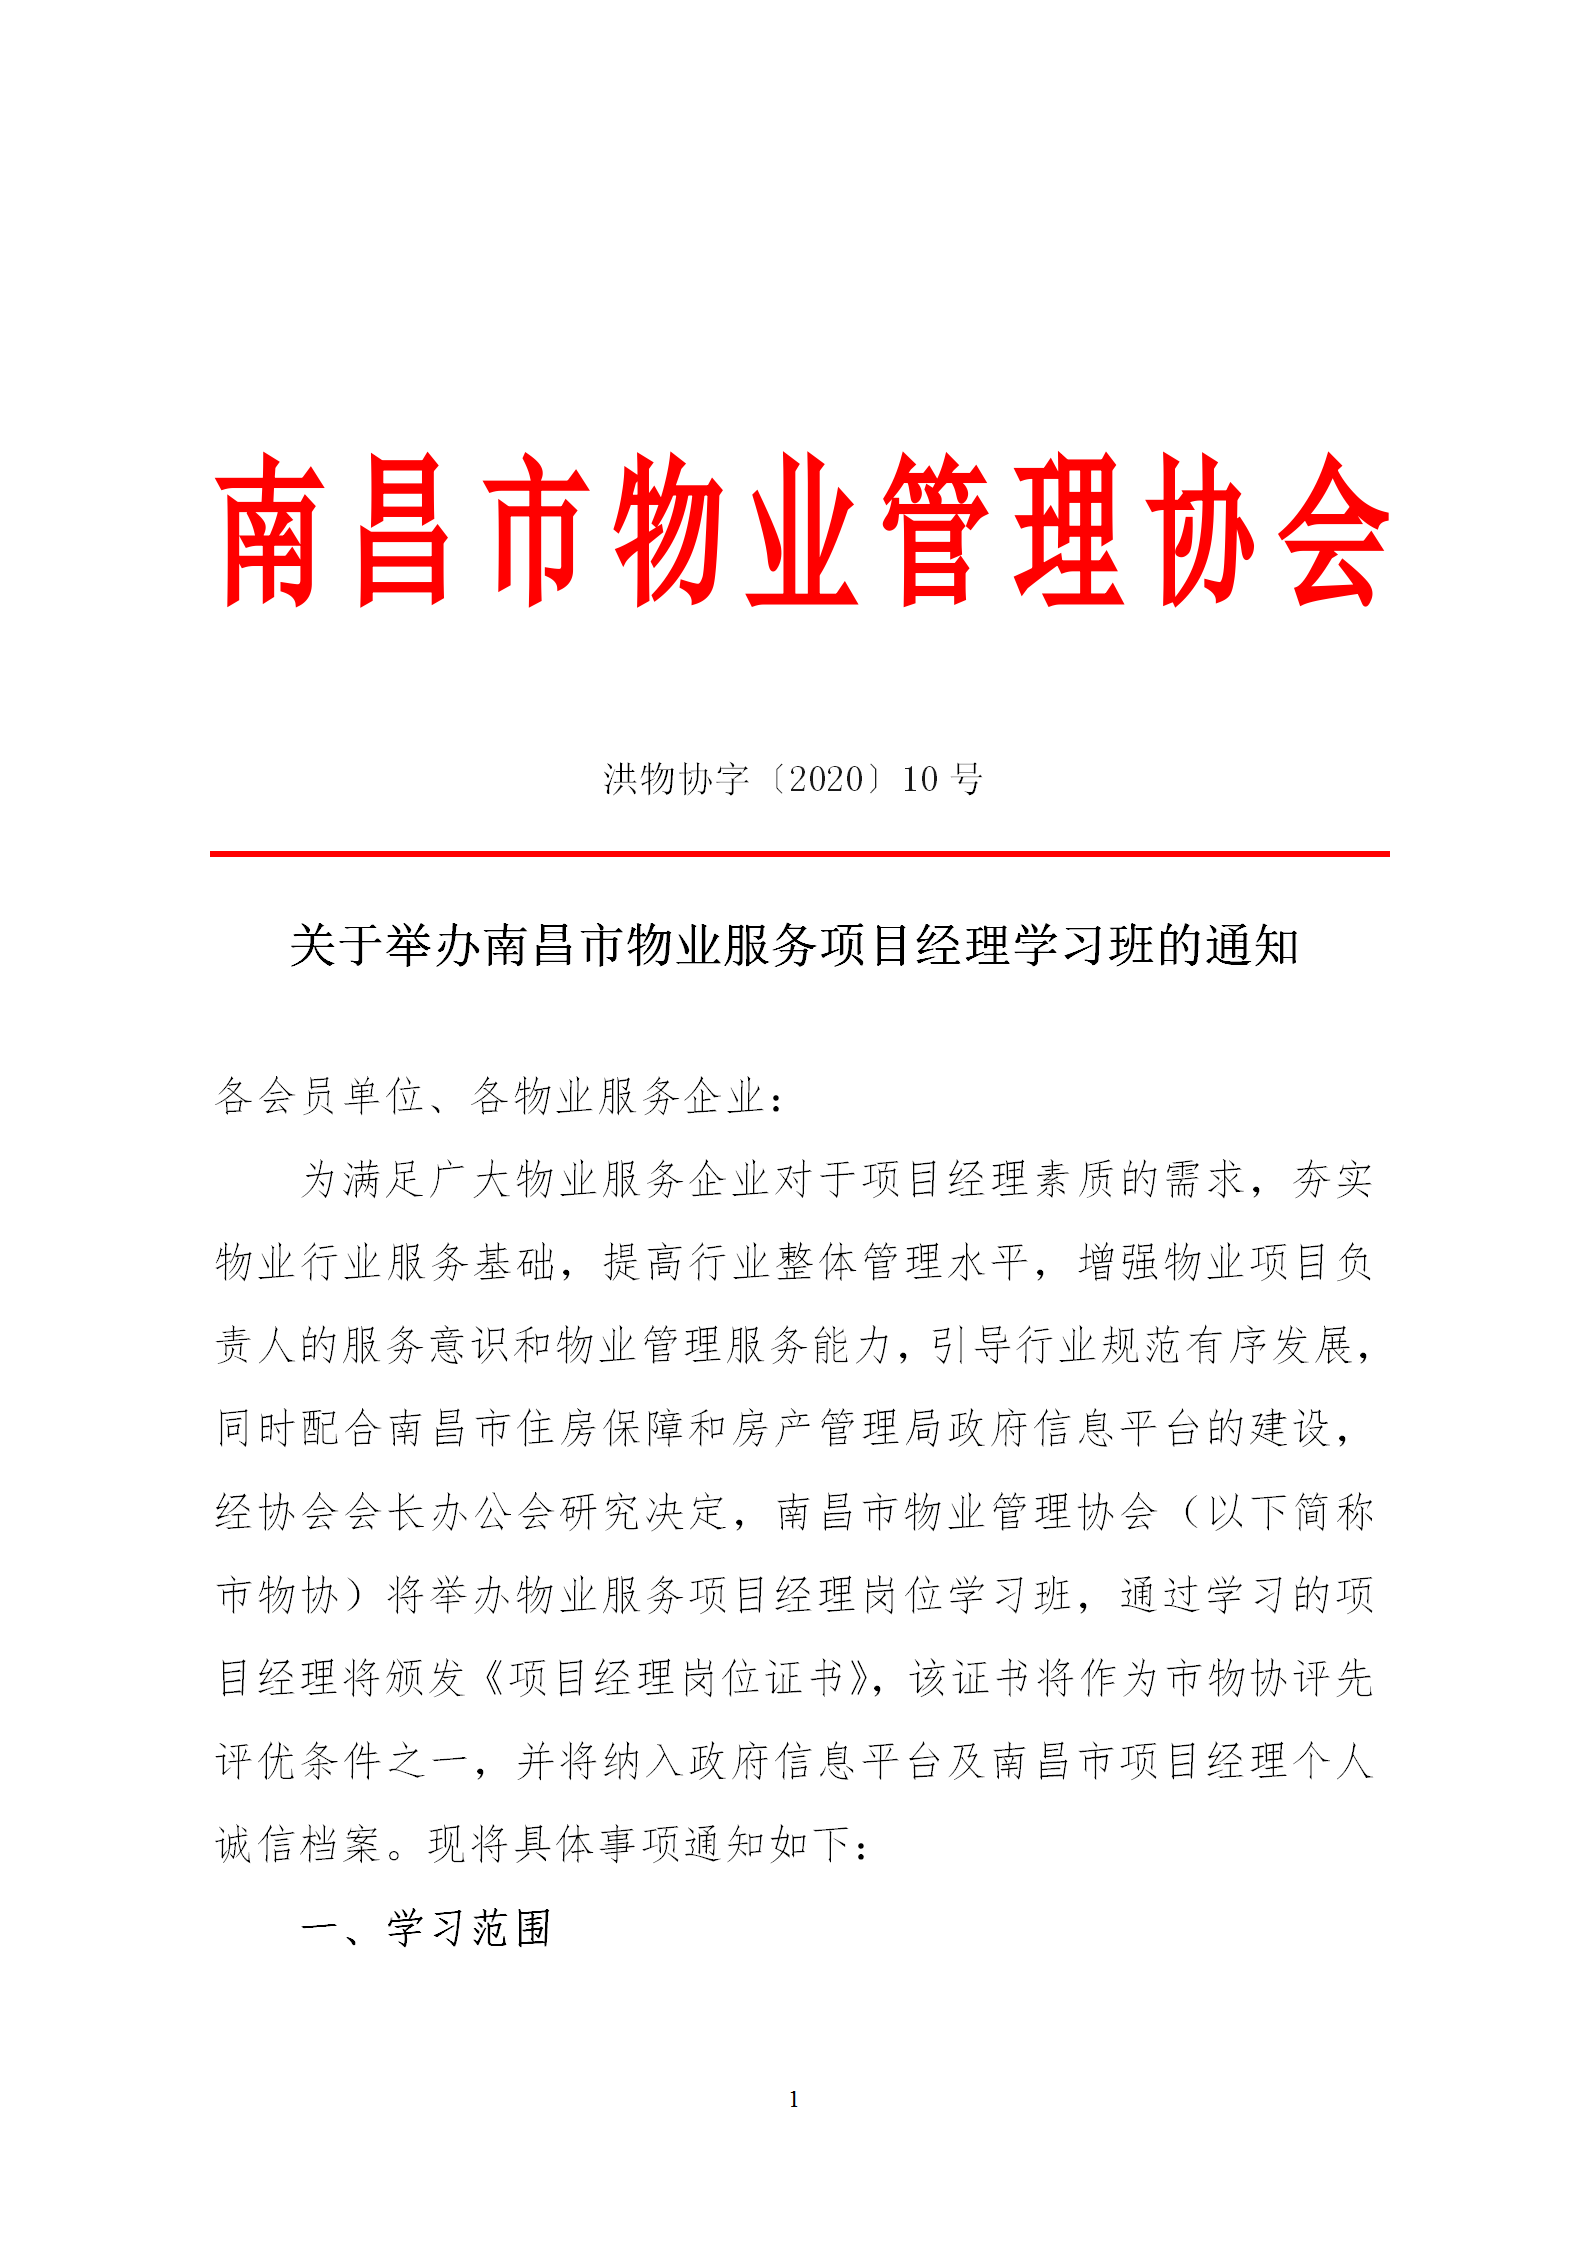 洪物协字[2020]10号 关于举办南昌市物业服务项目经理学习班的通知_01.png